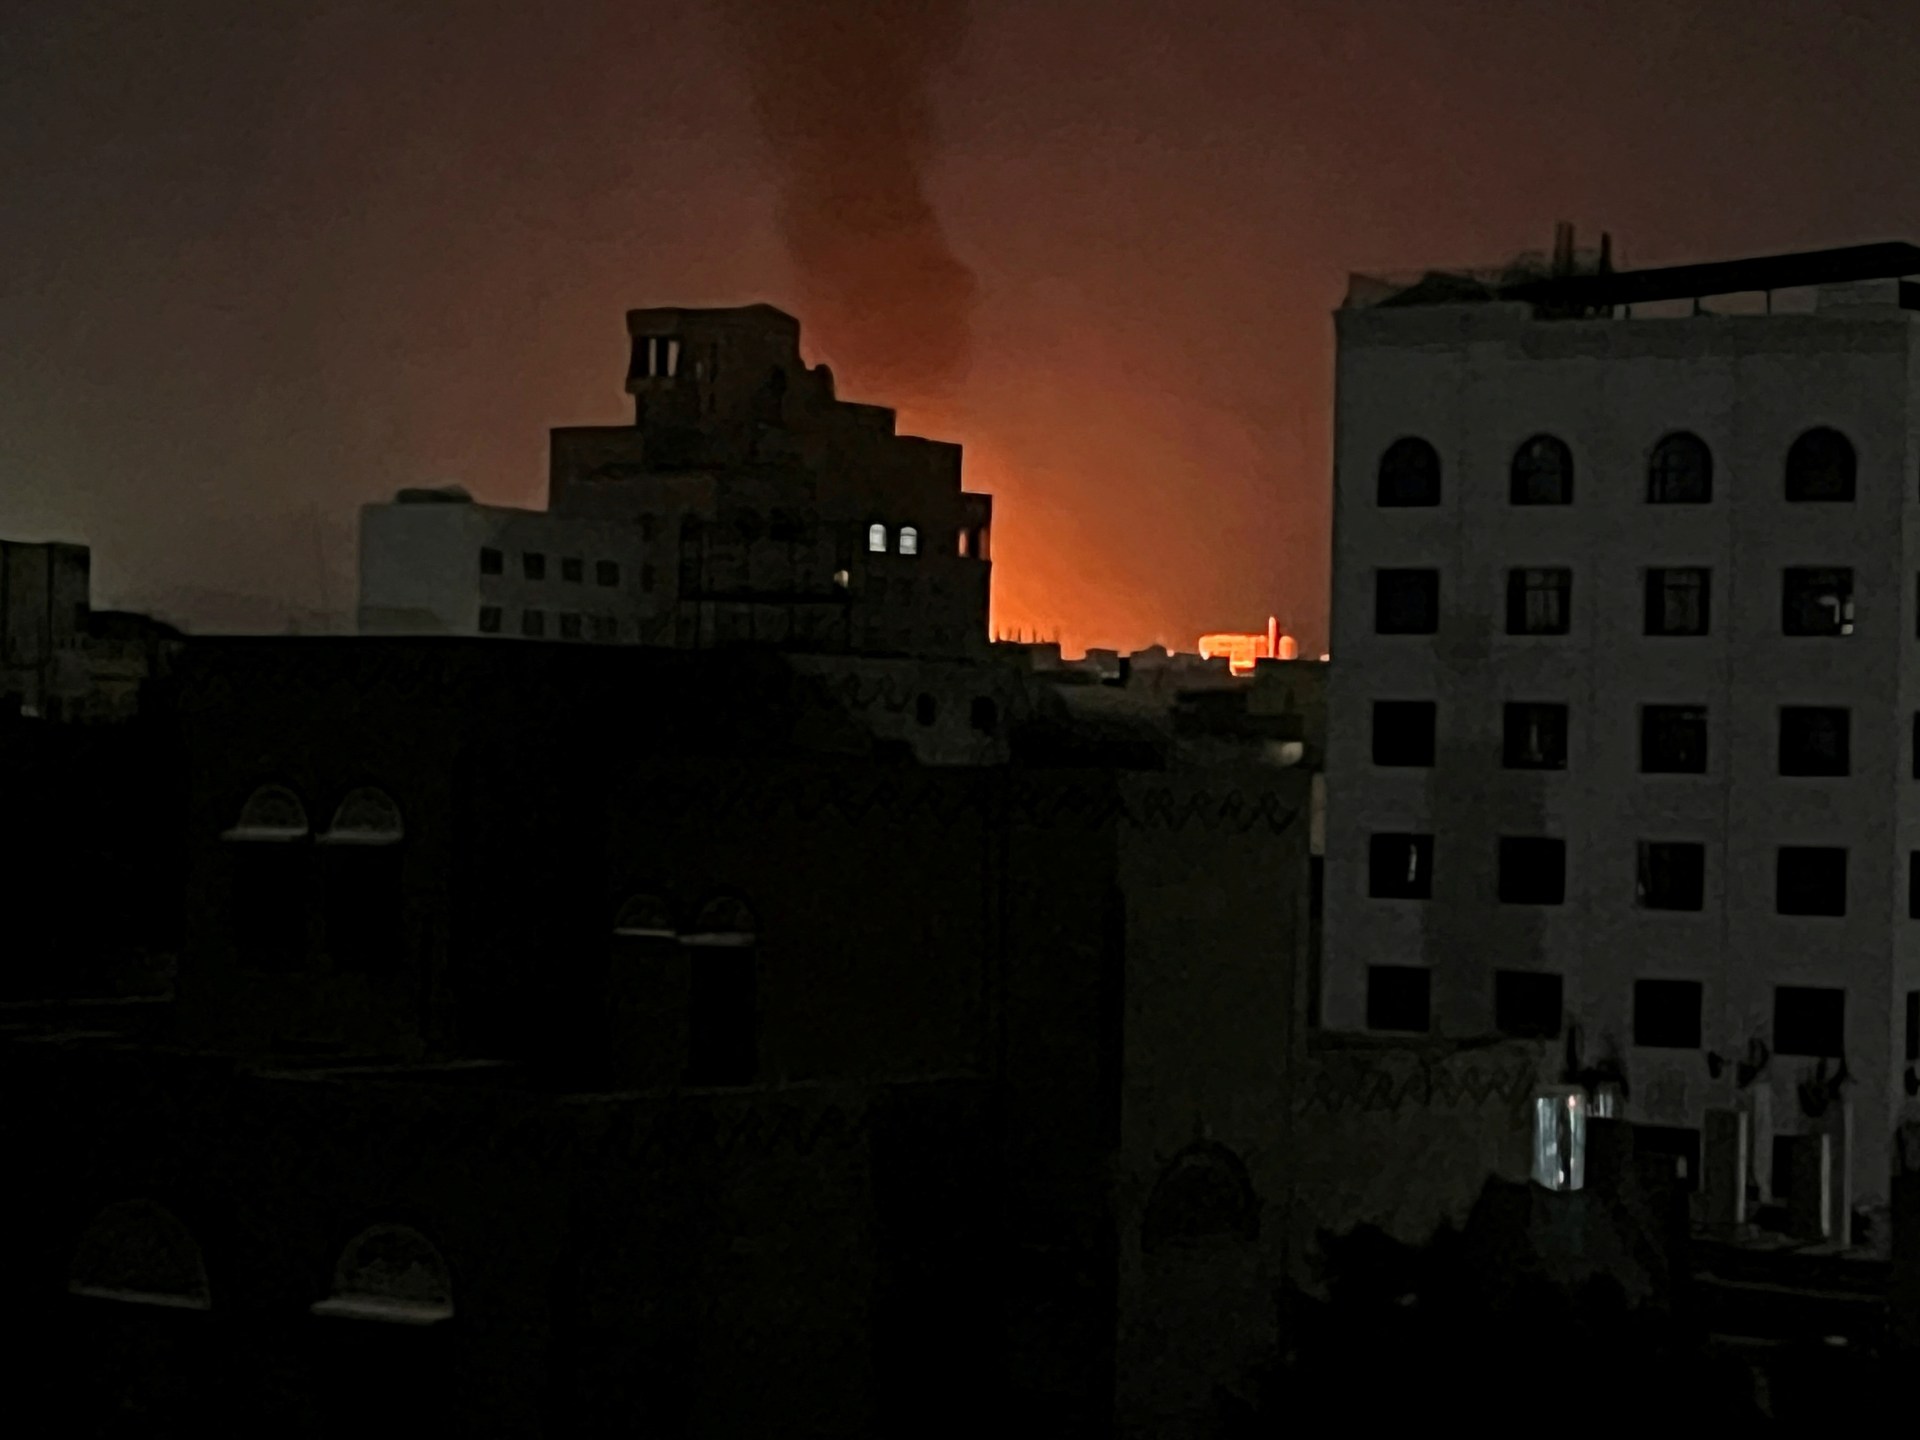 غارات على الحديدة وجماعة الحوثي تعلن مهاجمة مدمرتين أميركيتين | أخبار – البوكس نيوز